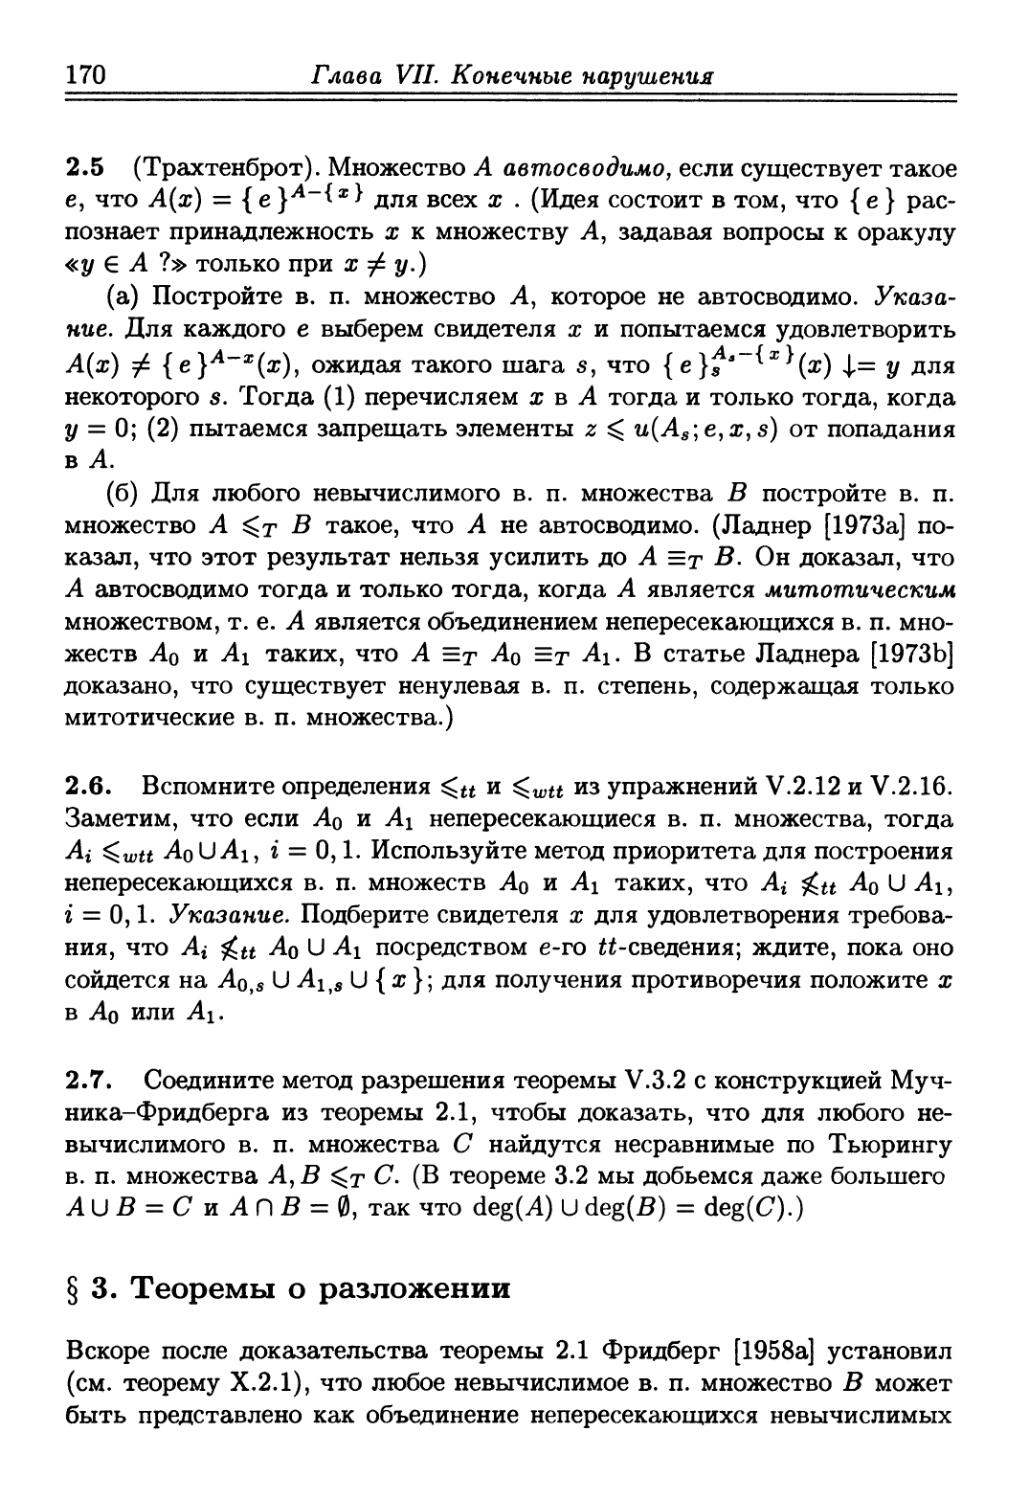 § 3. Теоремы о разложении